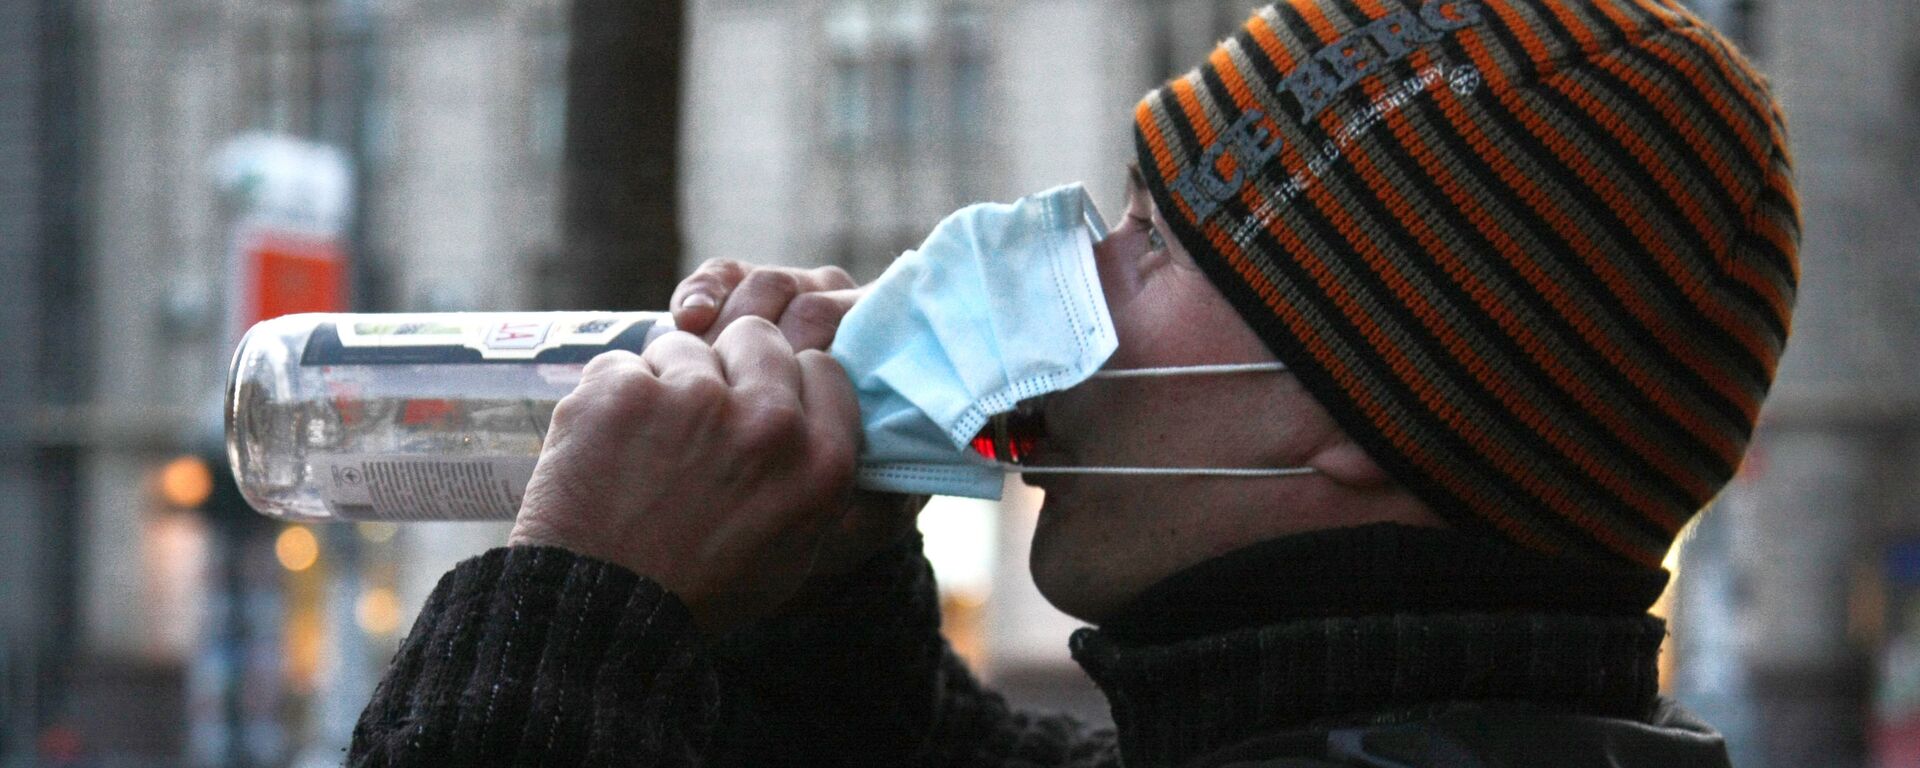 Меры предосторожности для защиты от вируса свиного гриппа в Киеве - Sputnik Кыргызстан, 1920, 27.03.2021